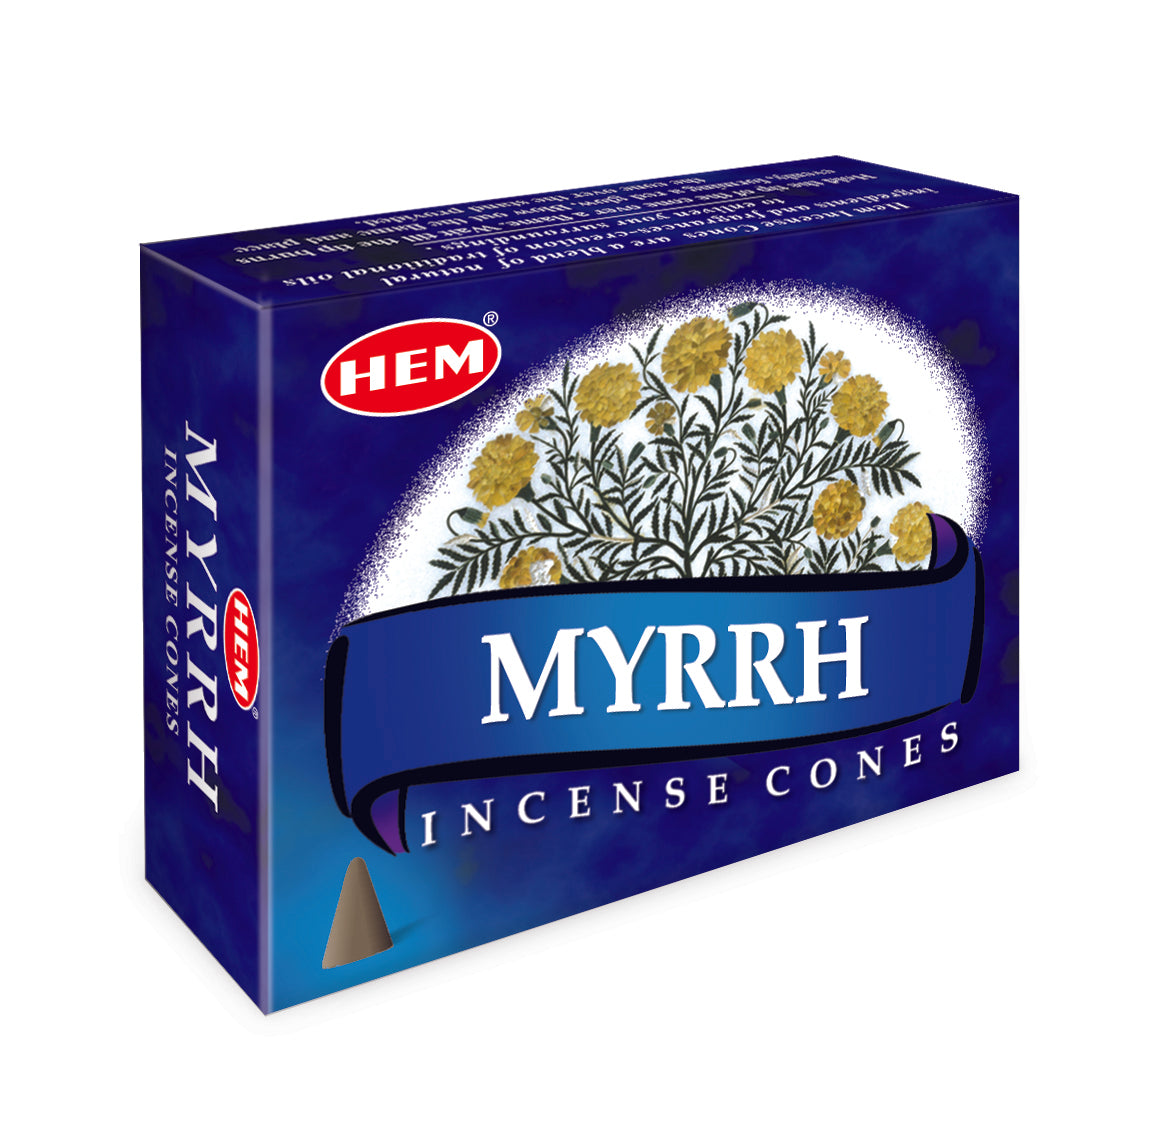 Myrrh Incense Cones 12 packets of 10 cones Each